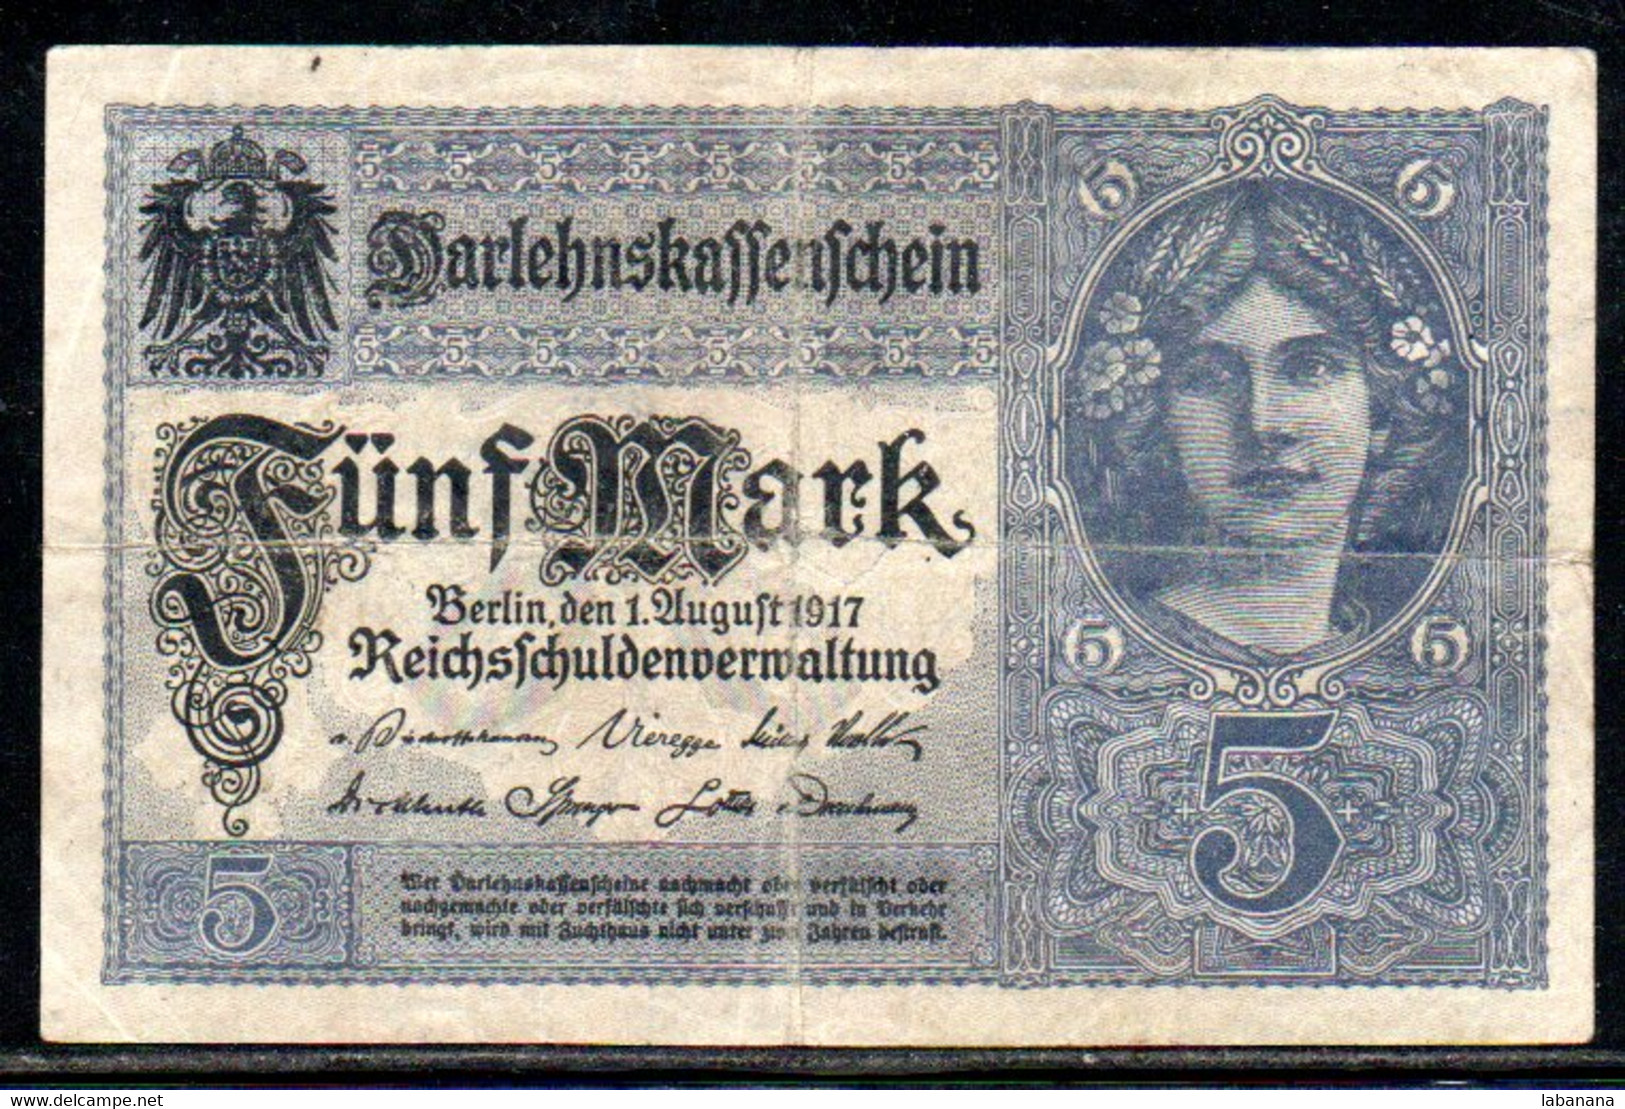 659-Allemagne 5m 1917 G232 - 5 Mark